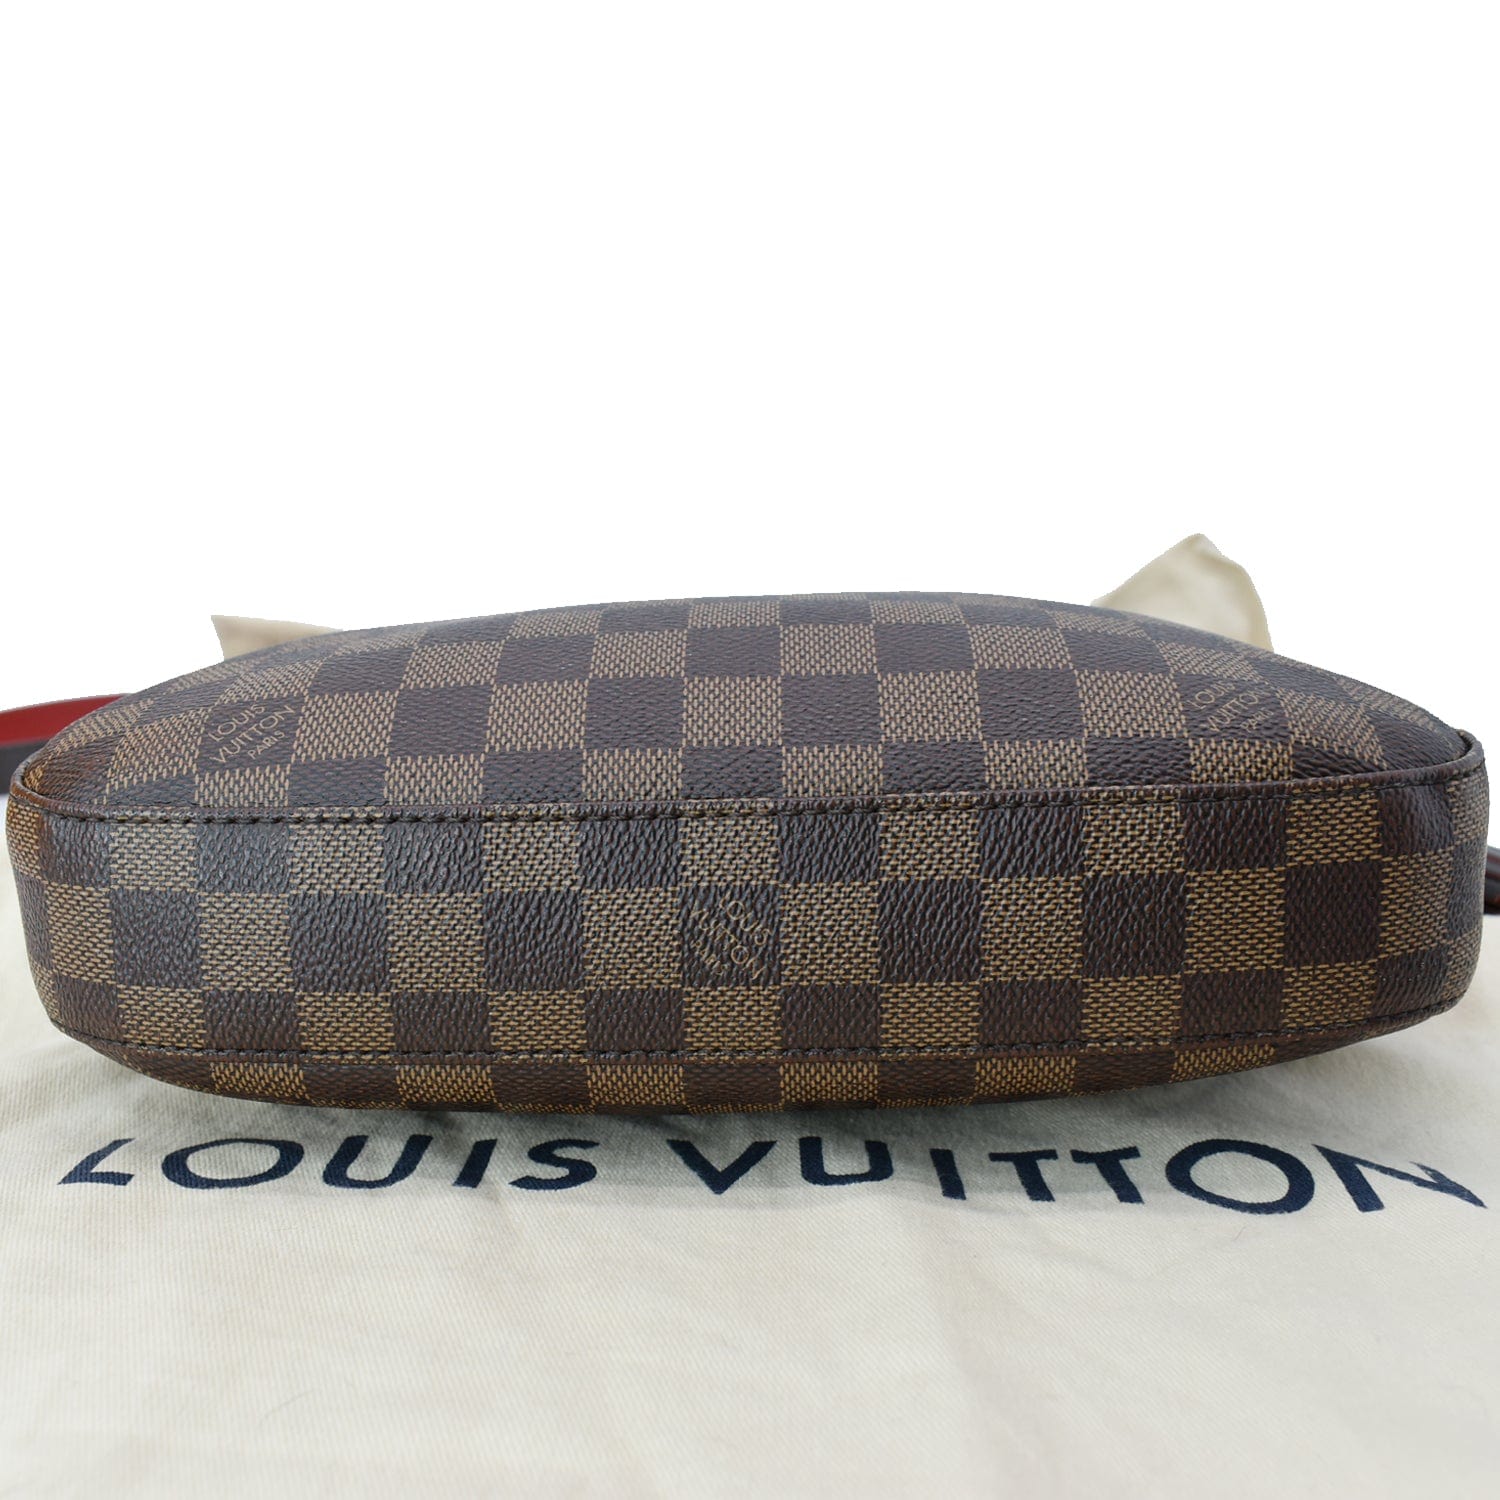 Authentic Louis Vuitton Damier Ebene South Bank Besace Bag Messenger B –  Paris Station Shop